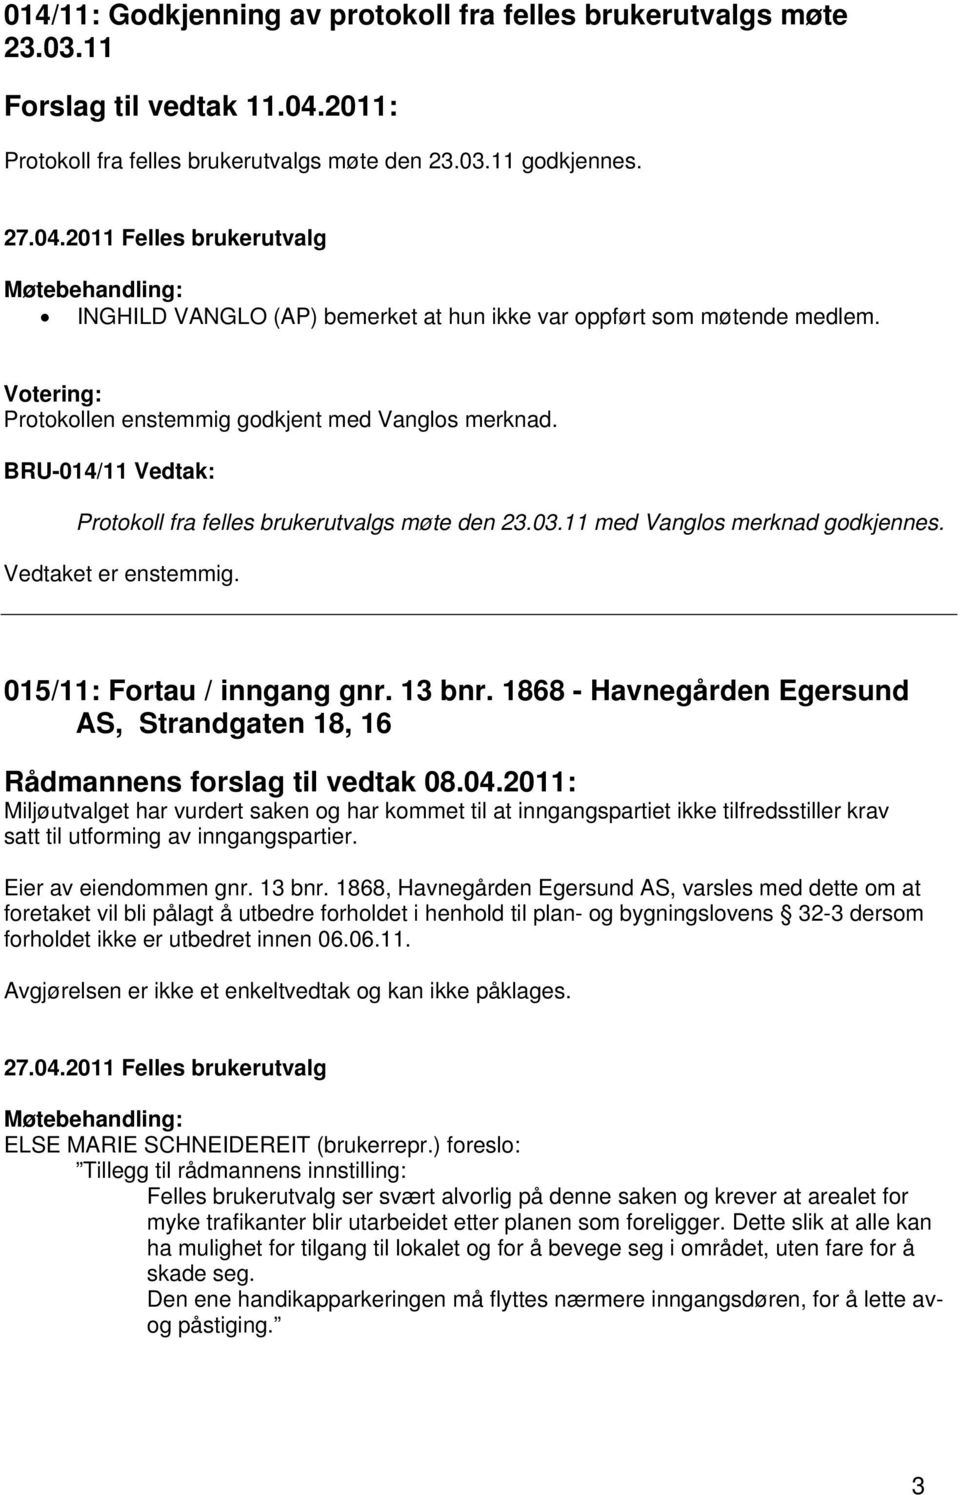 11 med Vanglos merknad godkjennes. 015/11: Fortau / inngang gnr. 13 bnr. 1868 - Havnegården Egersund AS, Strandgaten 18, 16 Rådmannens forslag til vedtak 08.04.